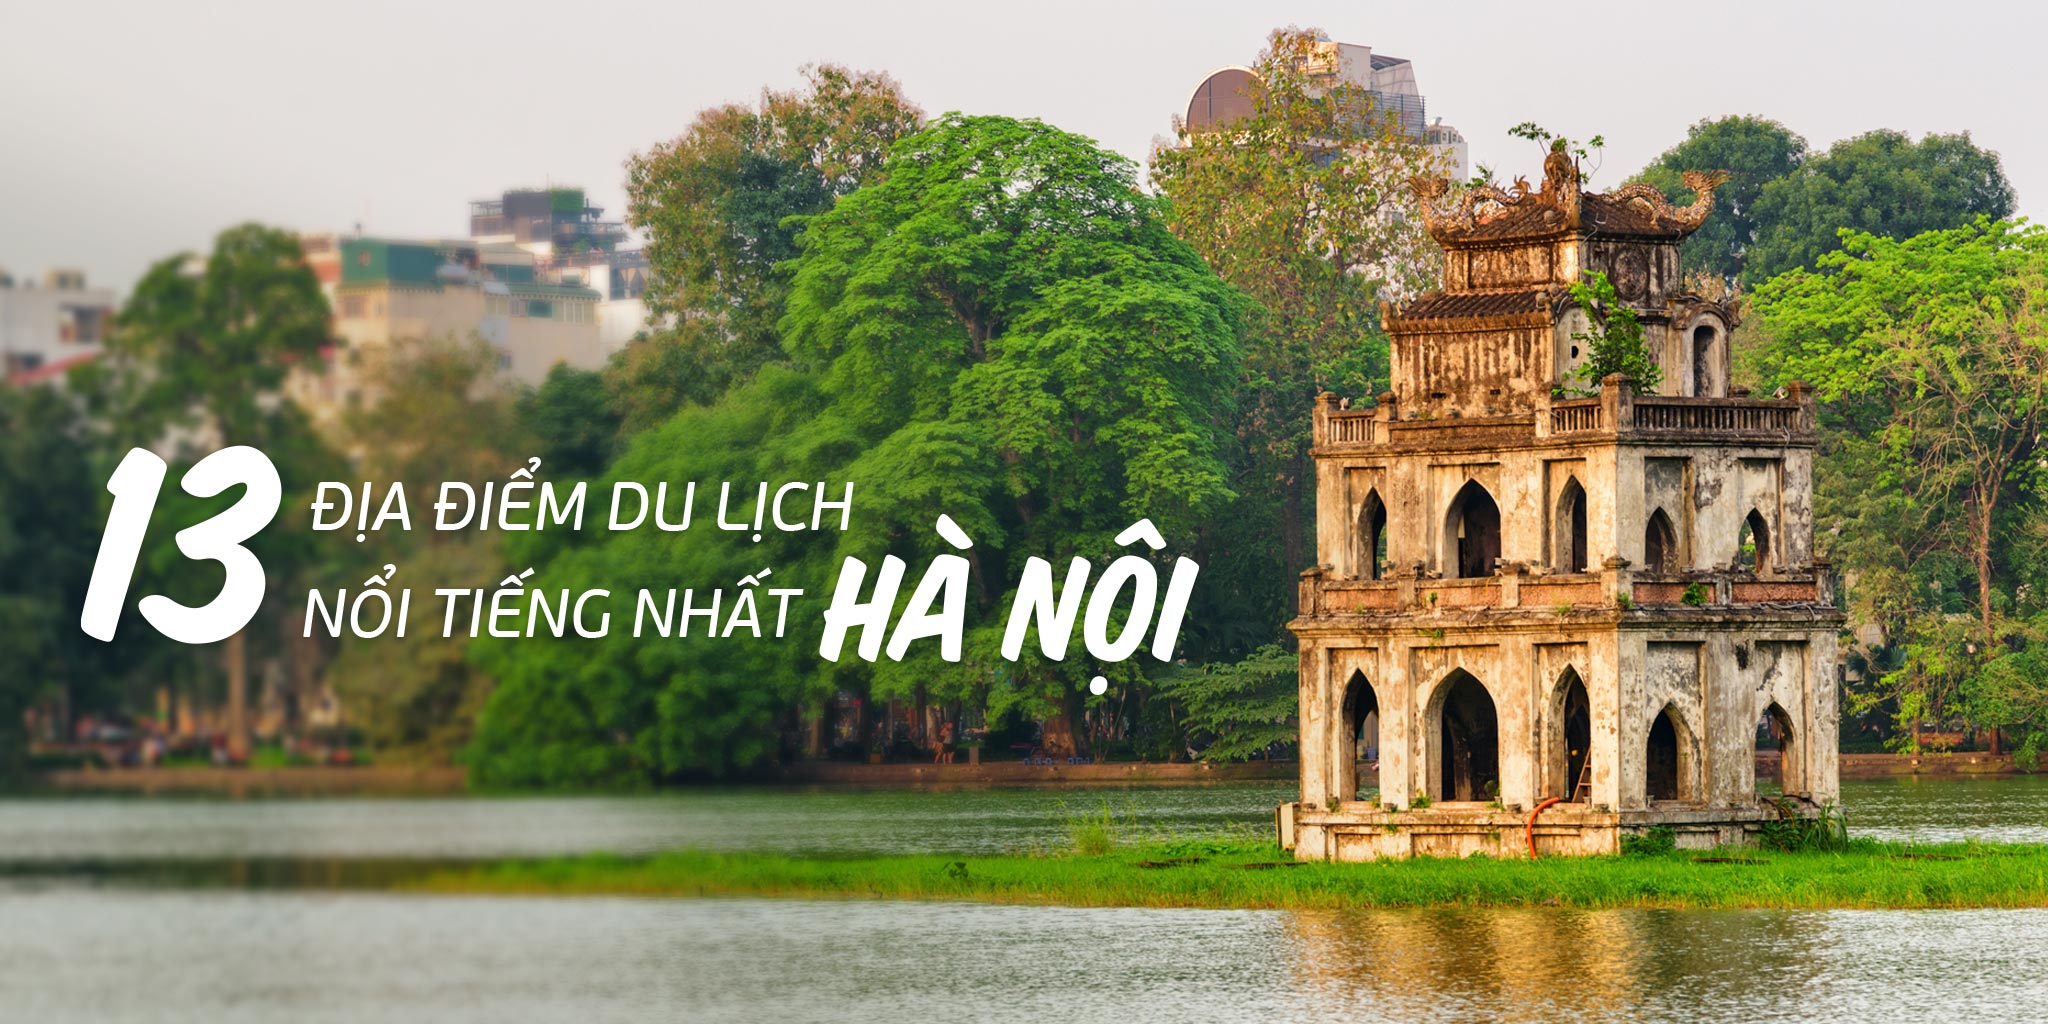 Top 13 địa điểm du lịch Hà Nội nổi tiếng nhất